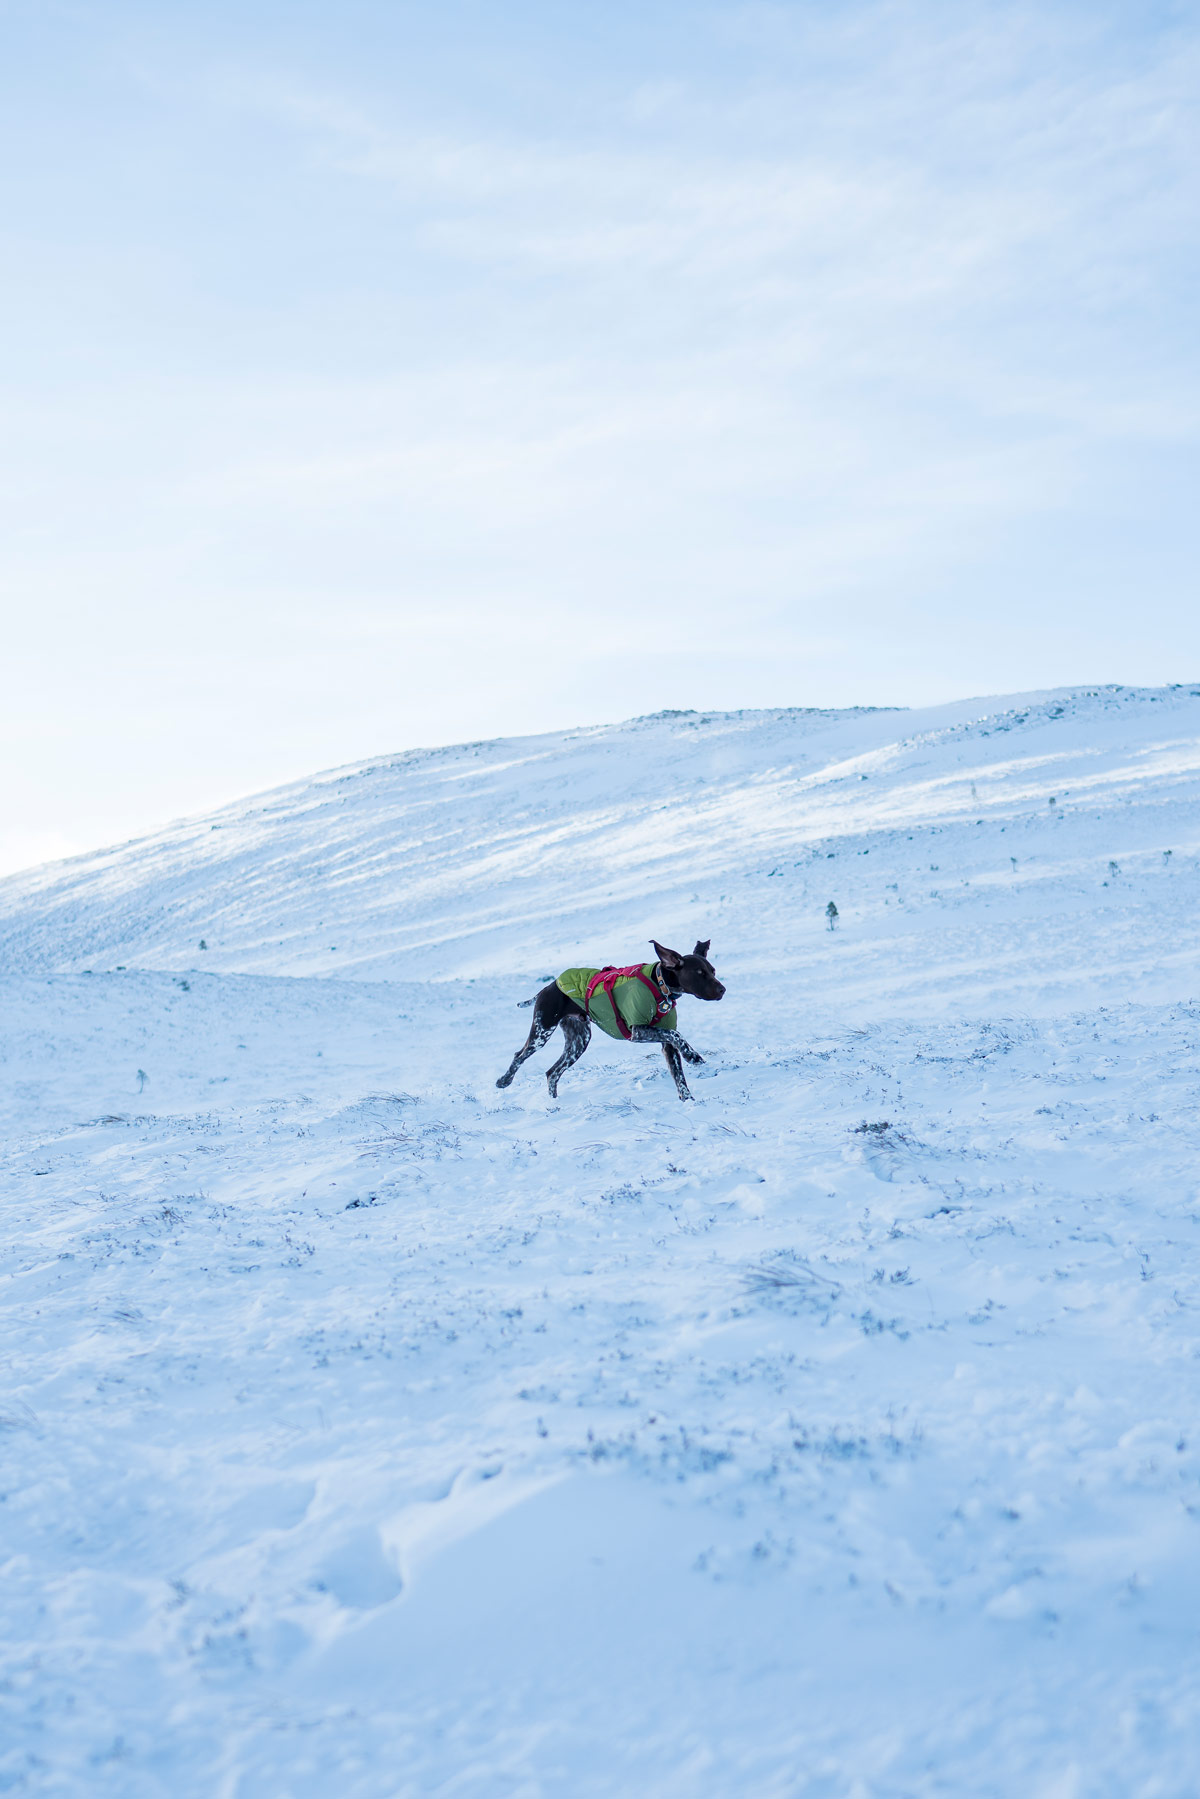 ski-touring-snow-dogs-scotland